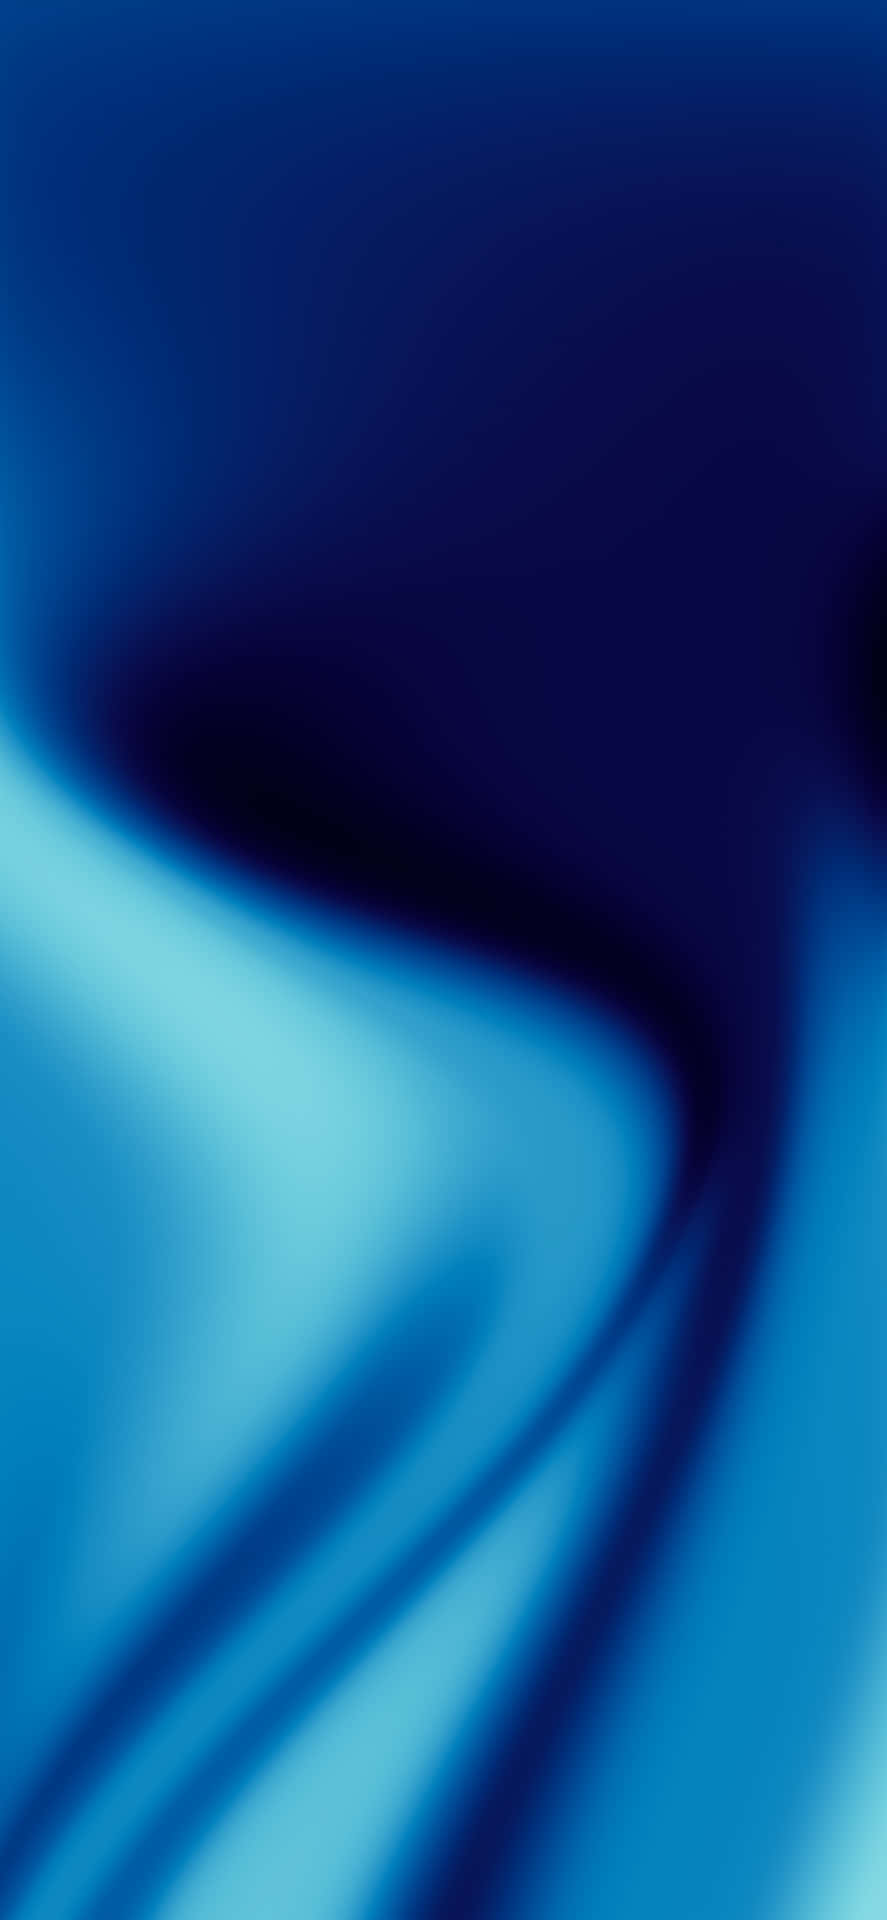 Einblauer Hintergrund Mit Einem Wellenmuster Wallpaper